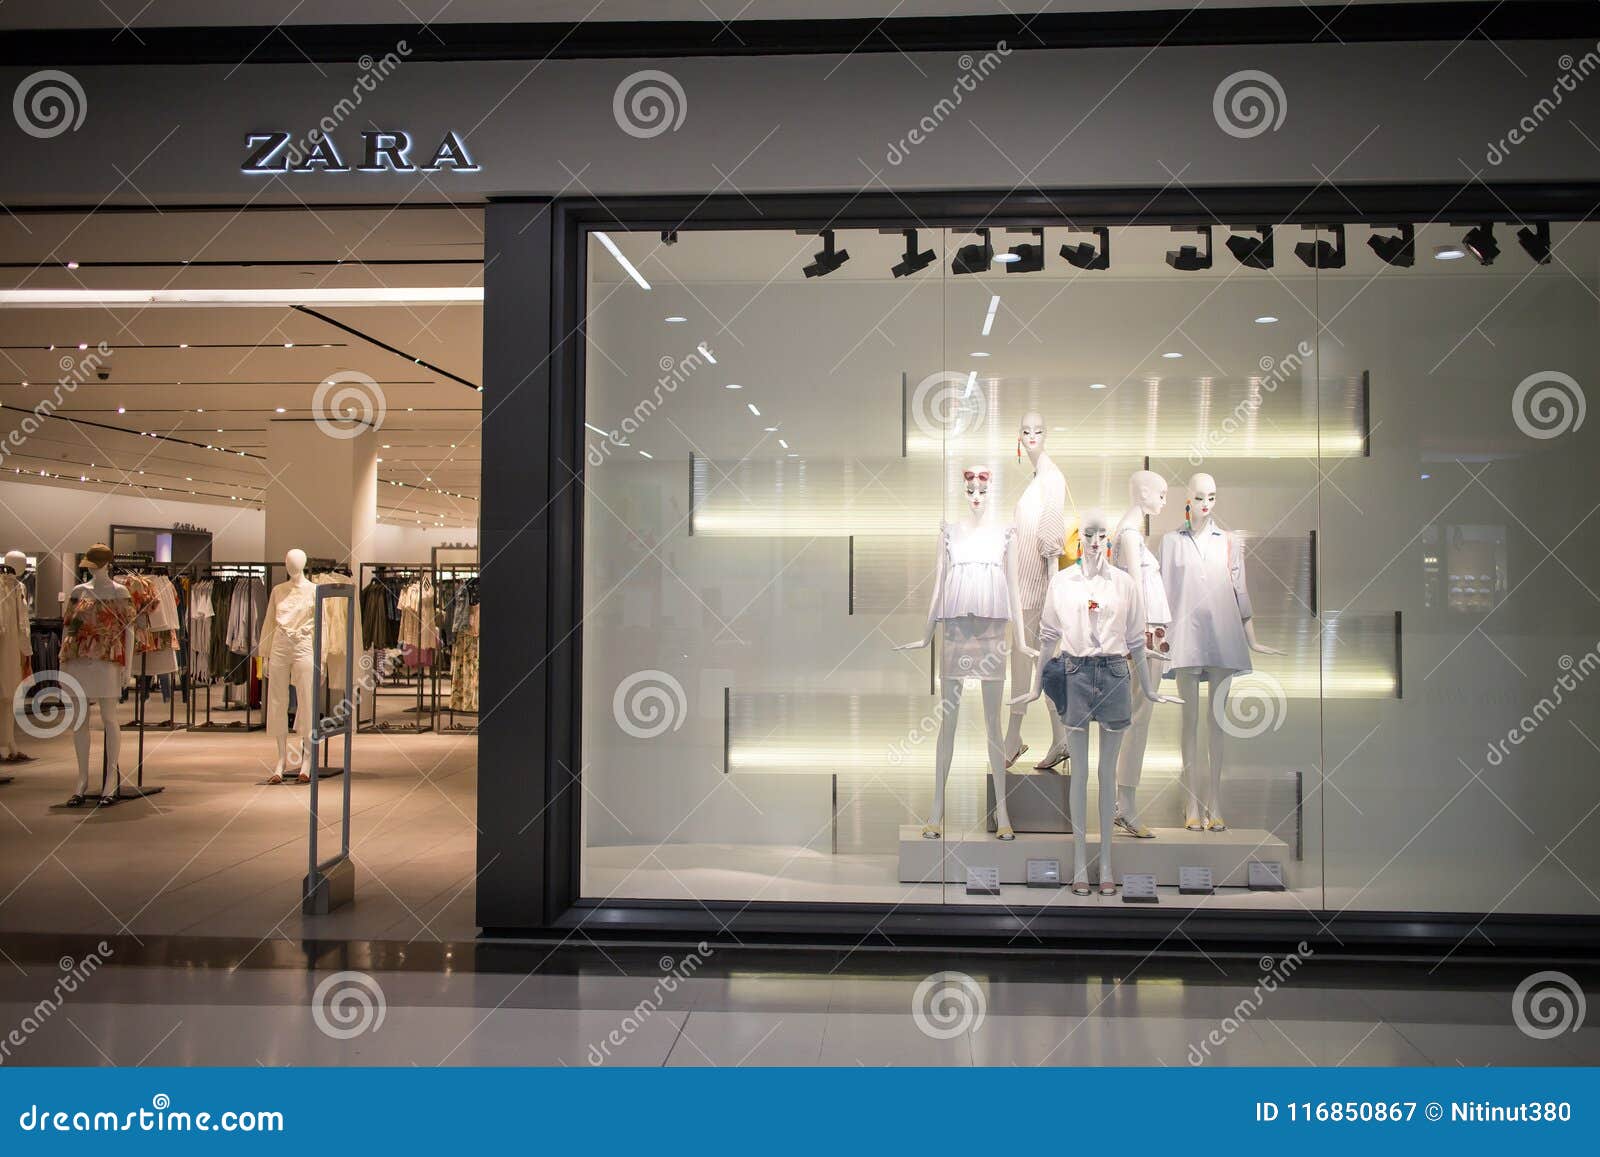 Loja De Zara Projeto Da Roupa E Empresa De Manufatura, I Fundado